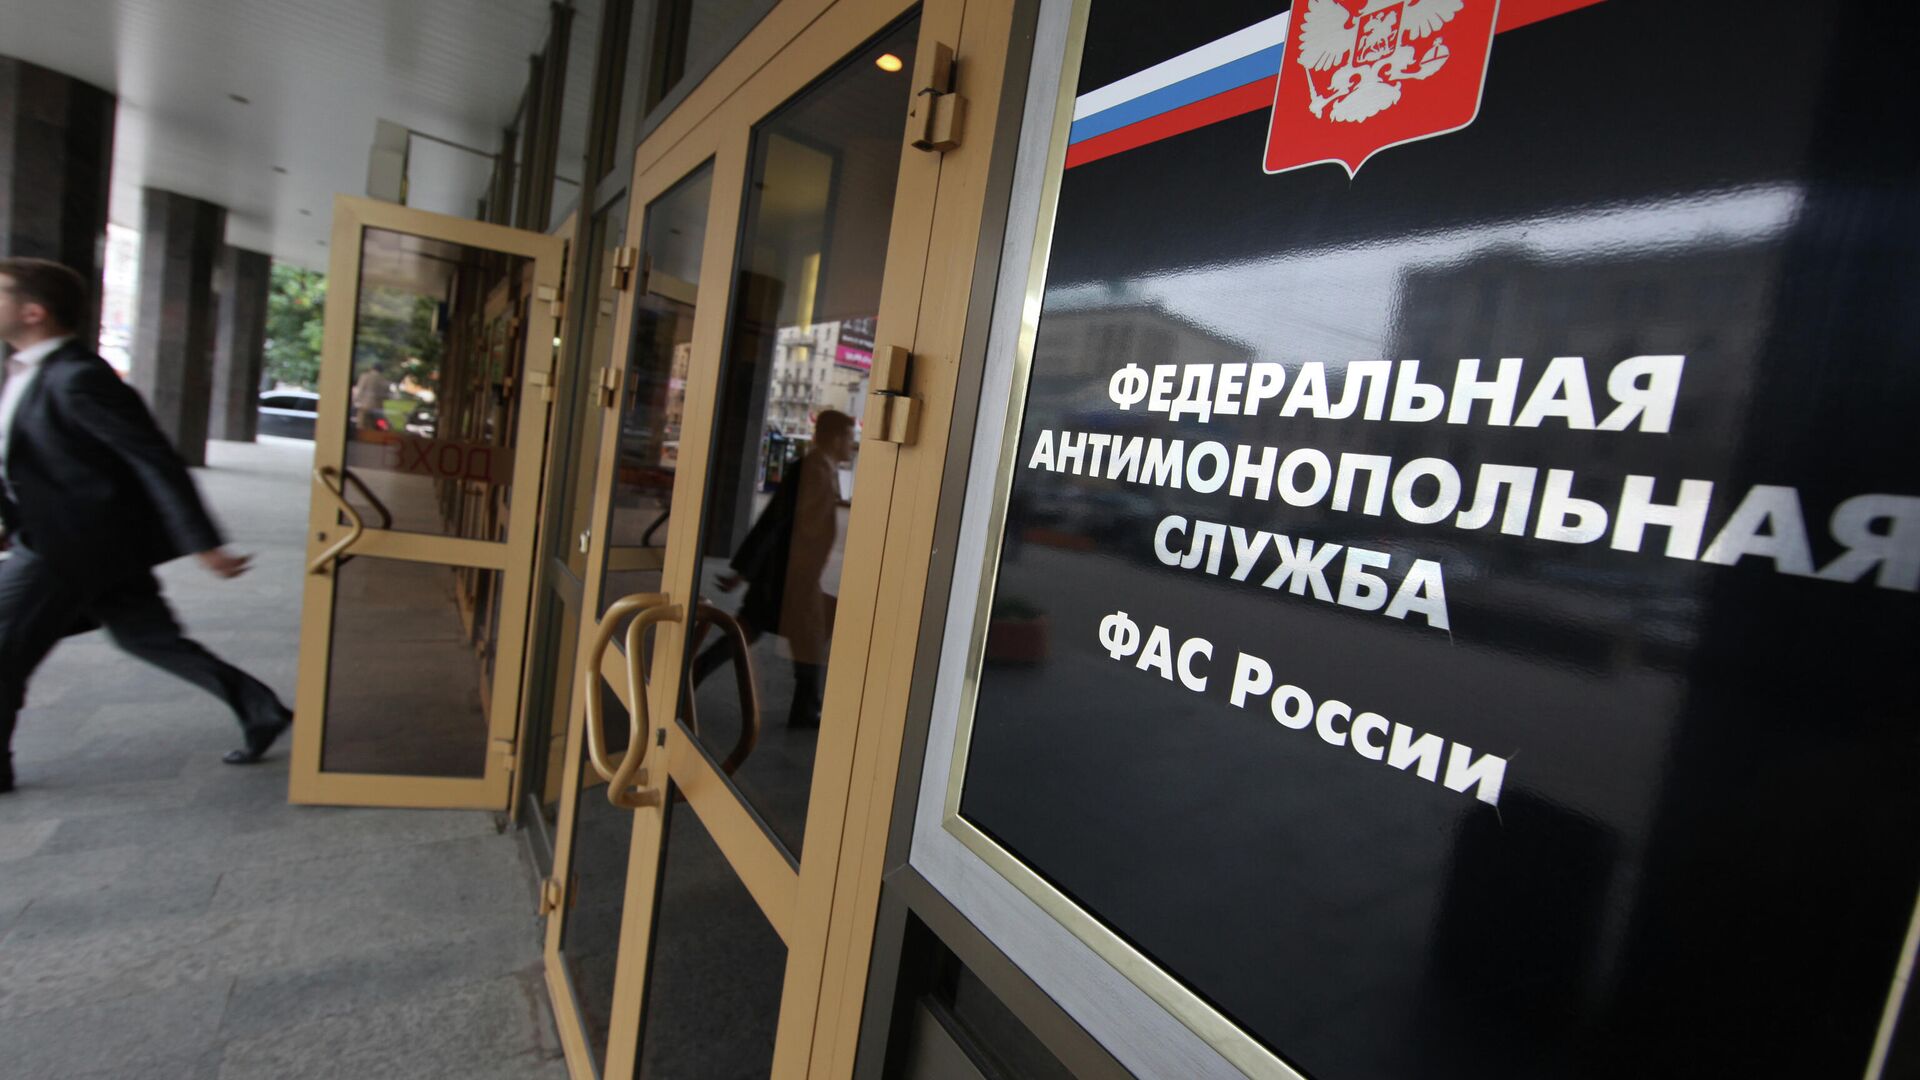 Booking должна выплатить штраф в 1,3 миллиарда рублей, заявила ФАС